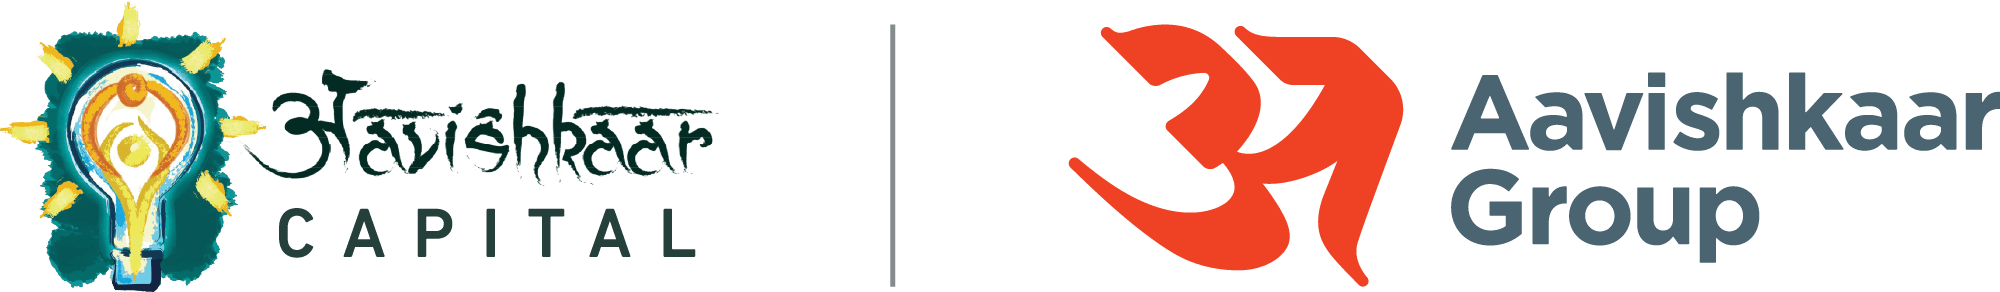 Aavishkaar (Aavishkaar Venture Management Services) logo